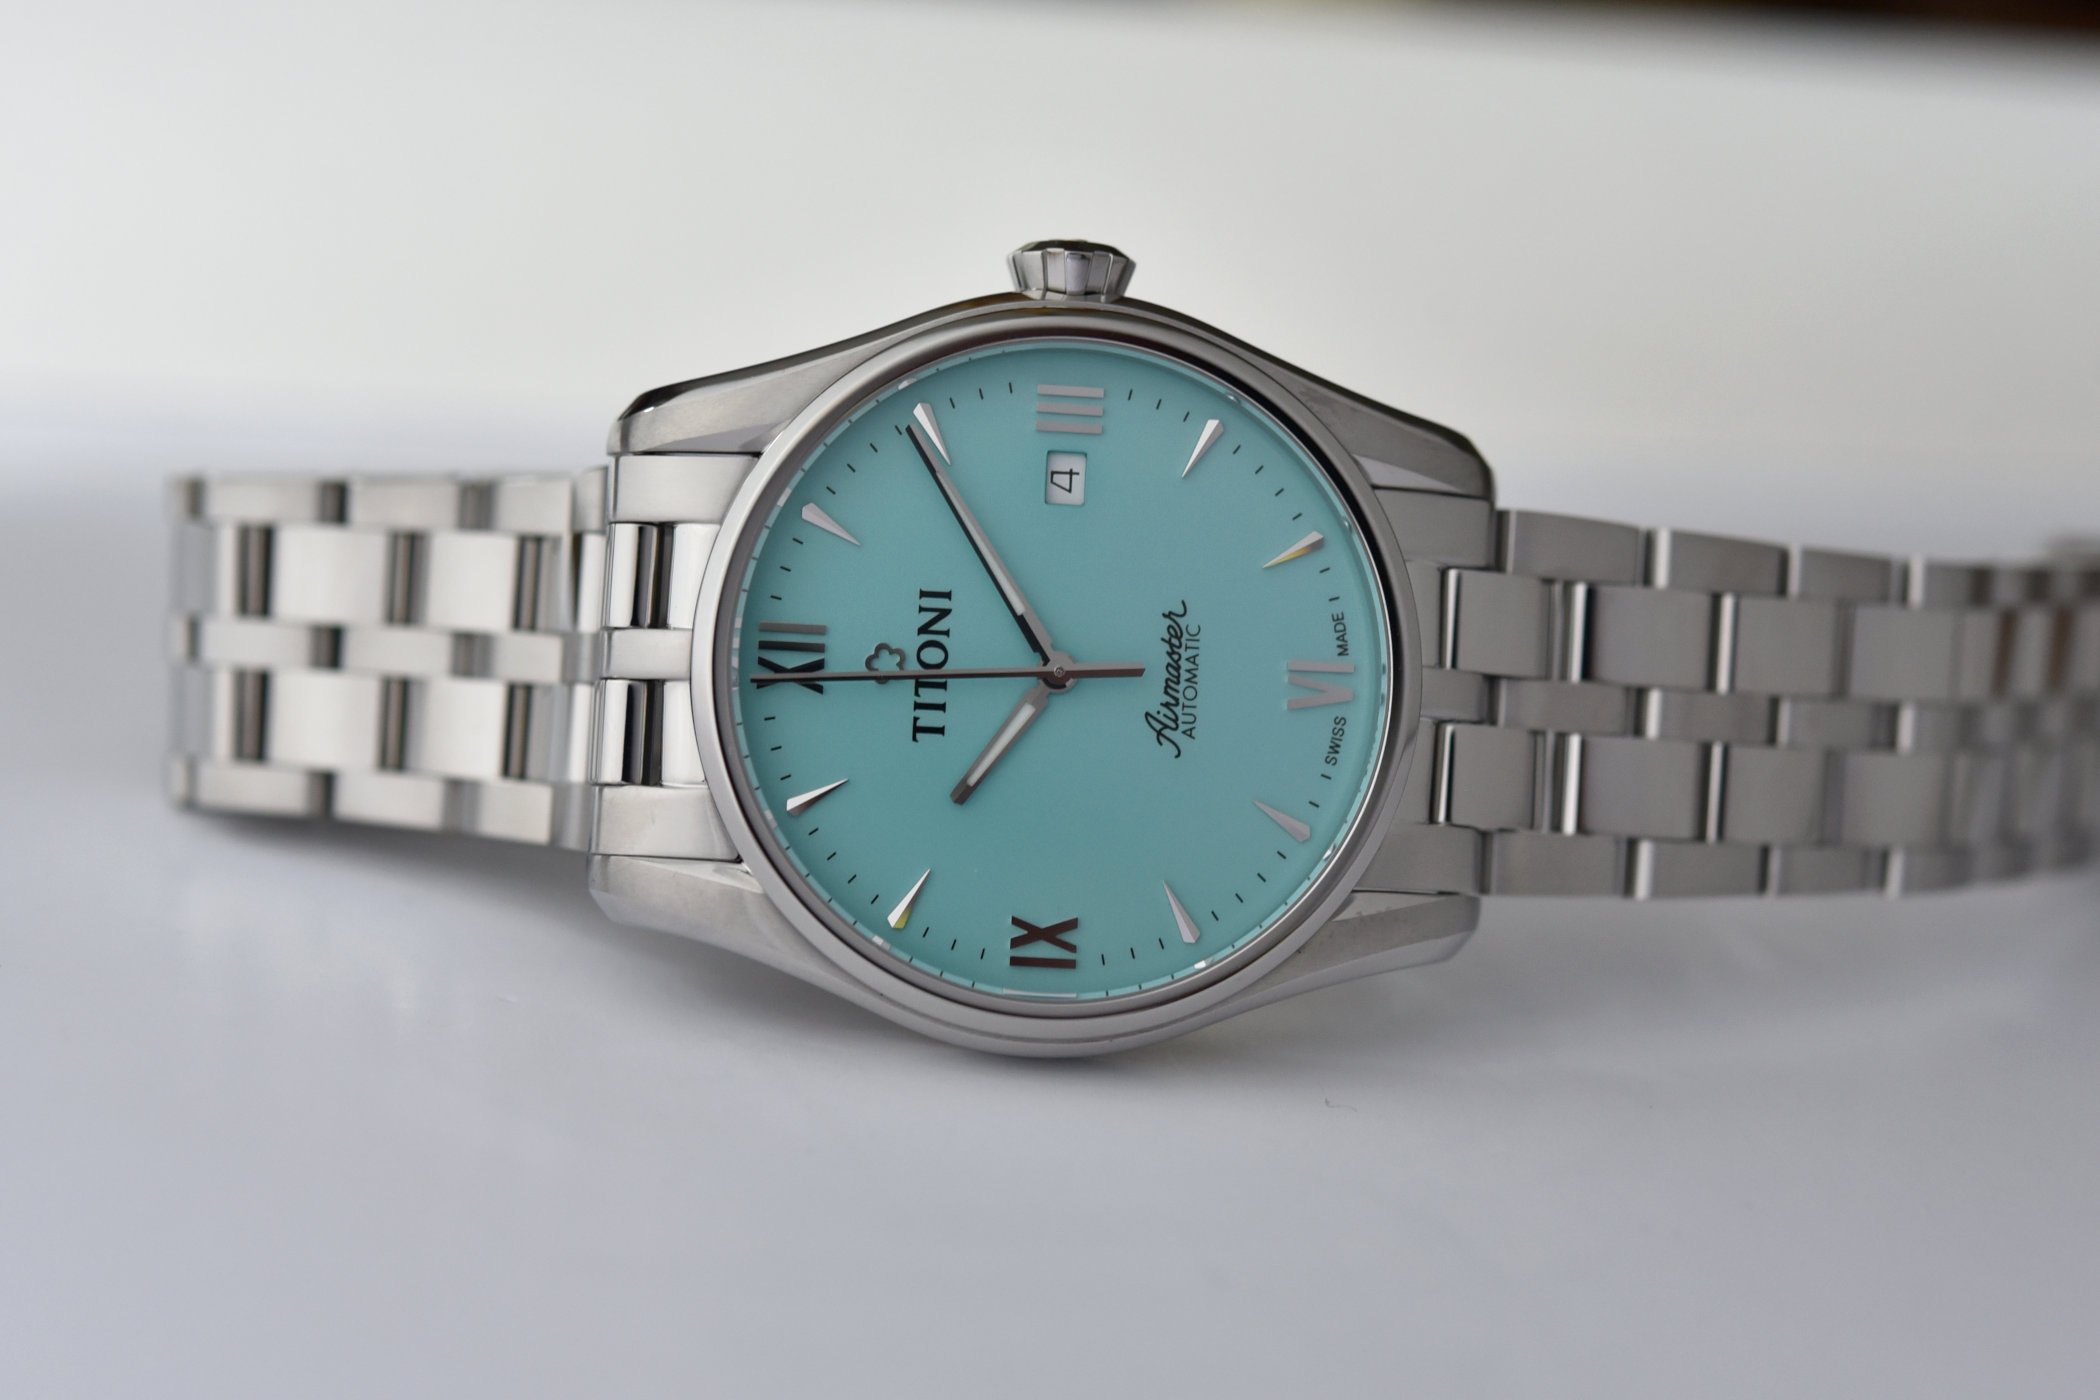 Представляем бирюзовые наручные часы Titoni Airmaster Glacier Turquoise